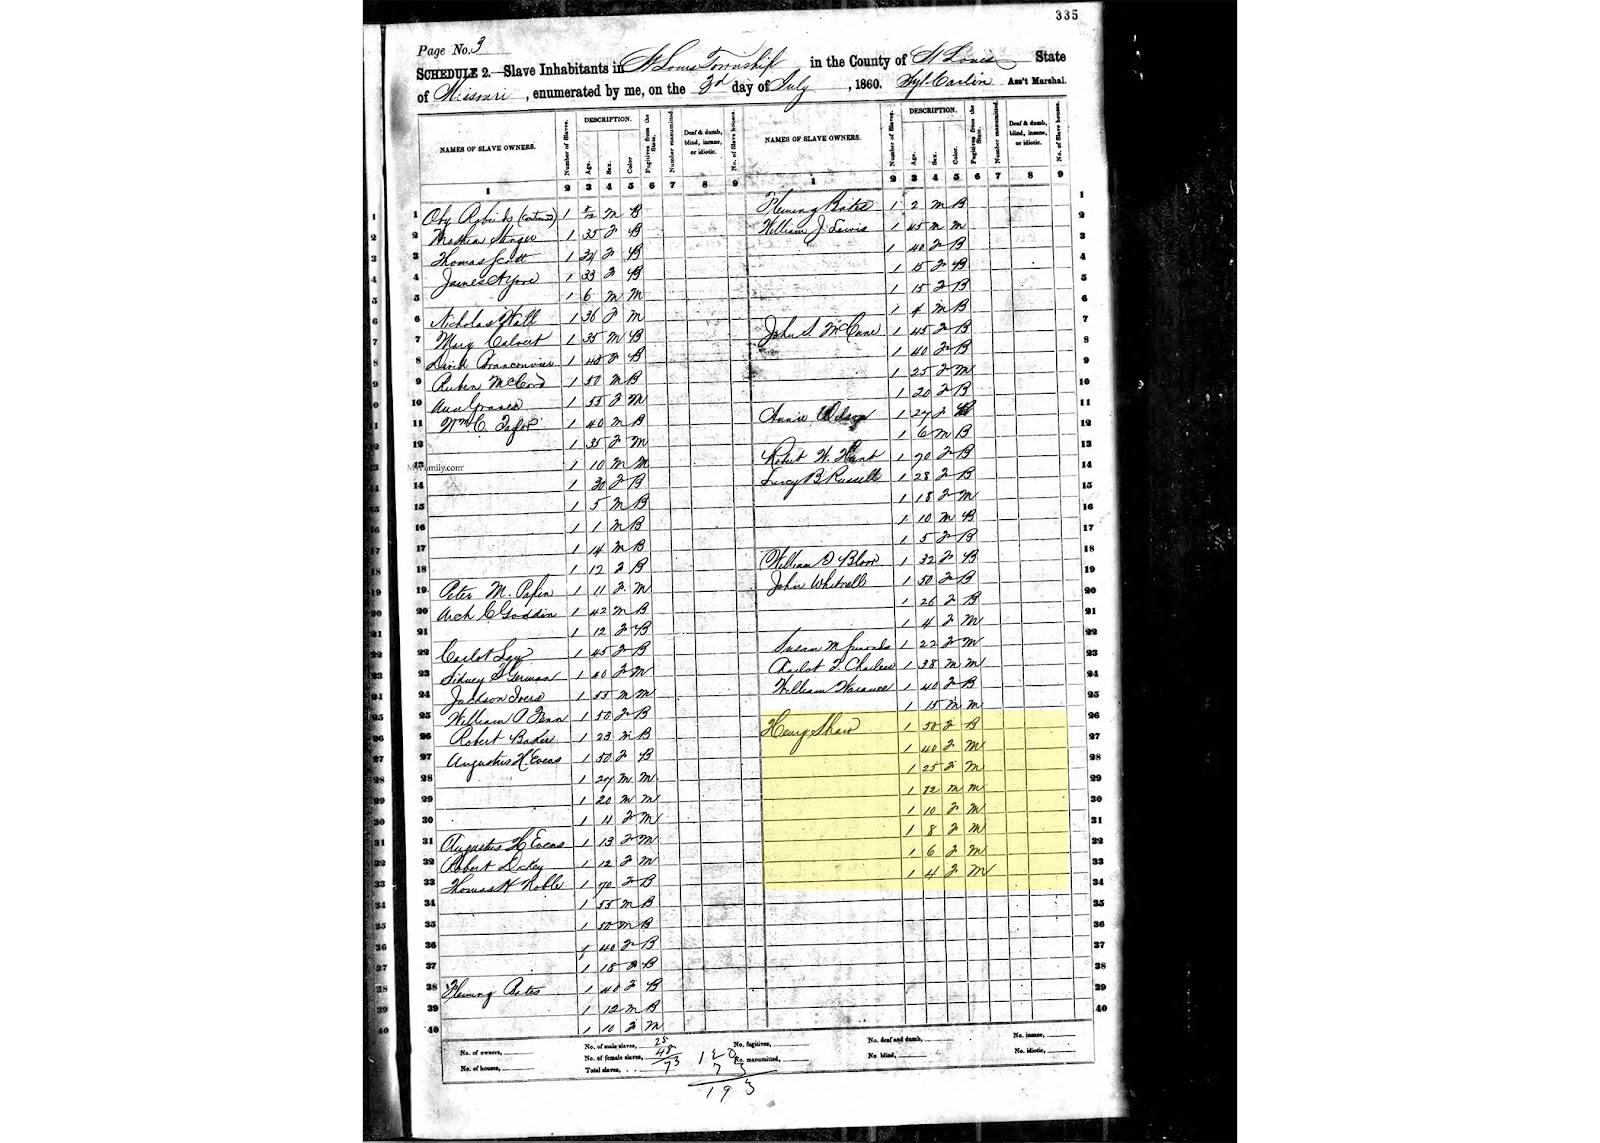 1860 inhabitants record